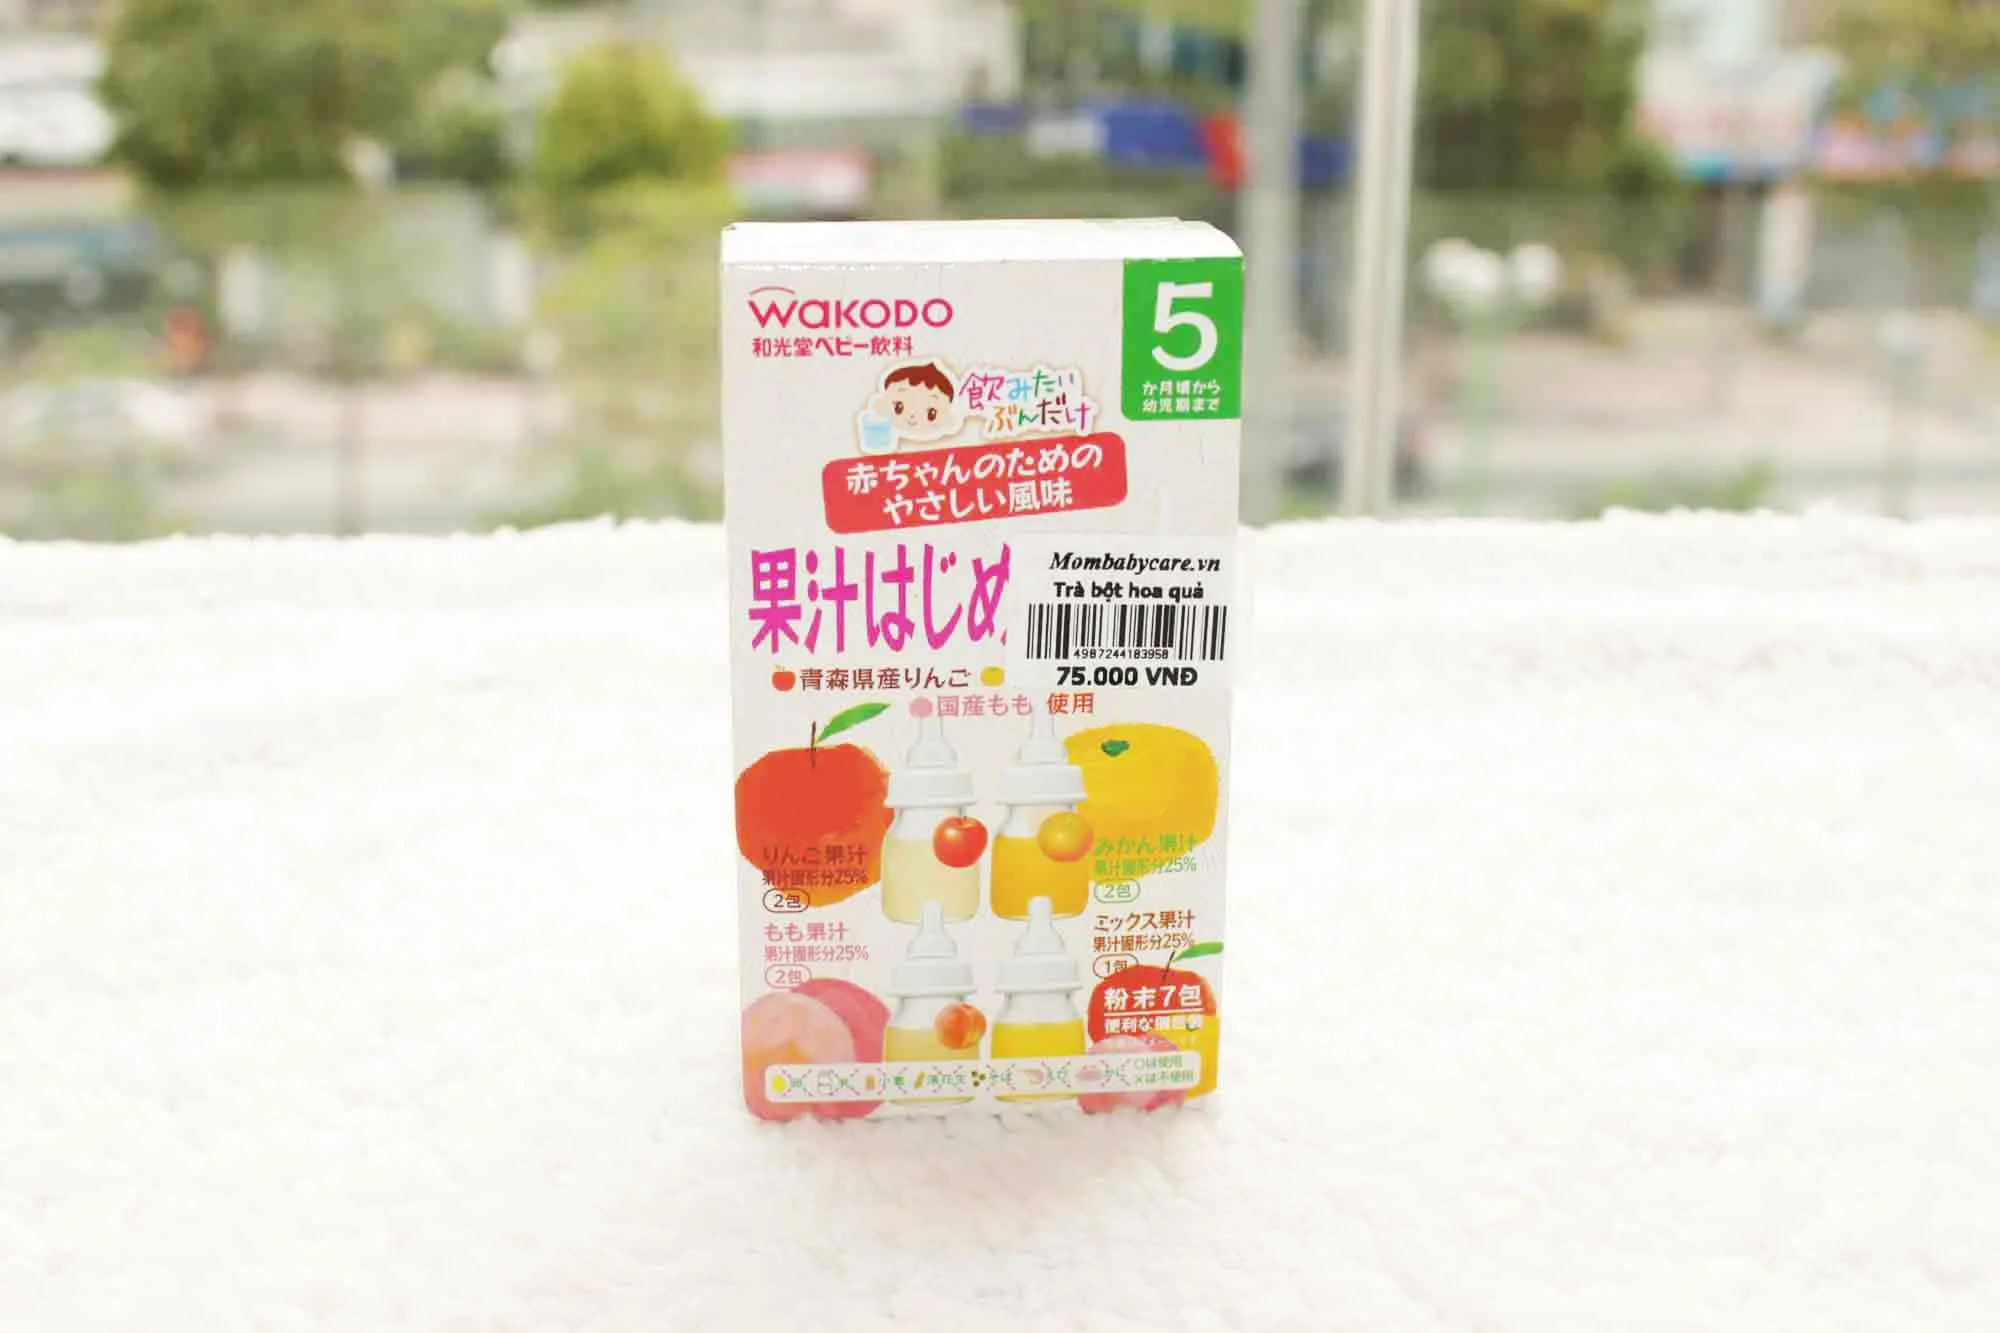 Đánh giá nước hoa quả Wakodo Nhật có tốt không? 3 lý do nên mua cho bé